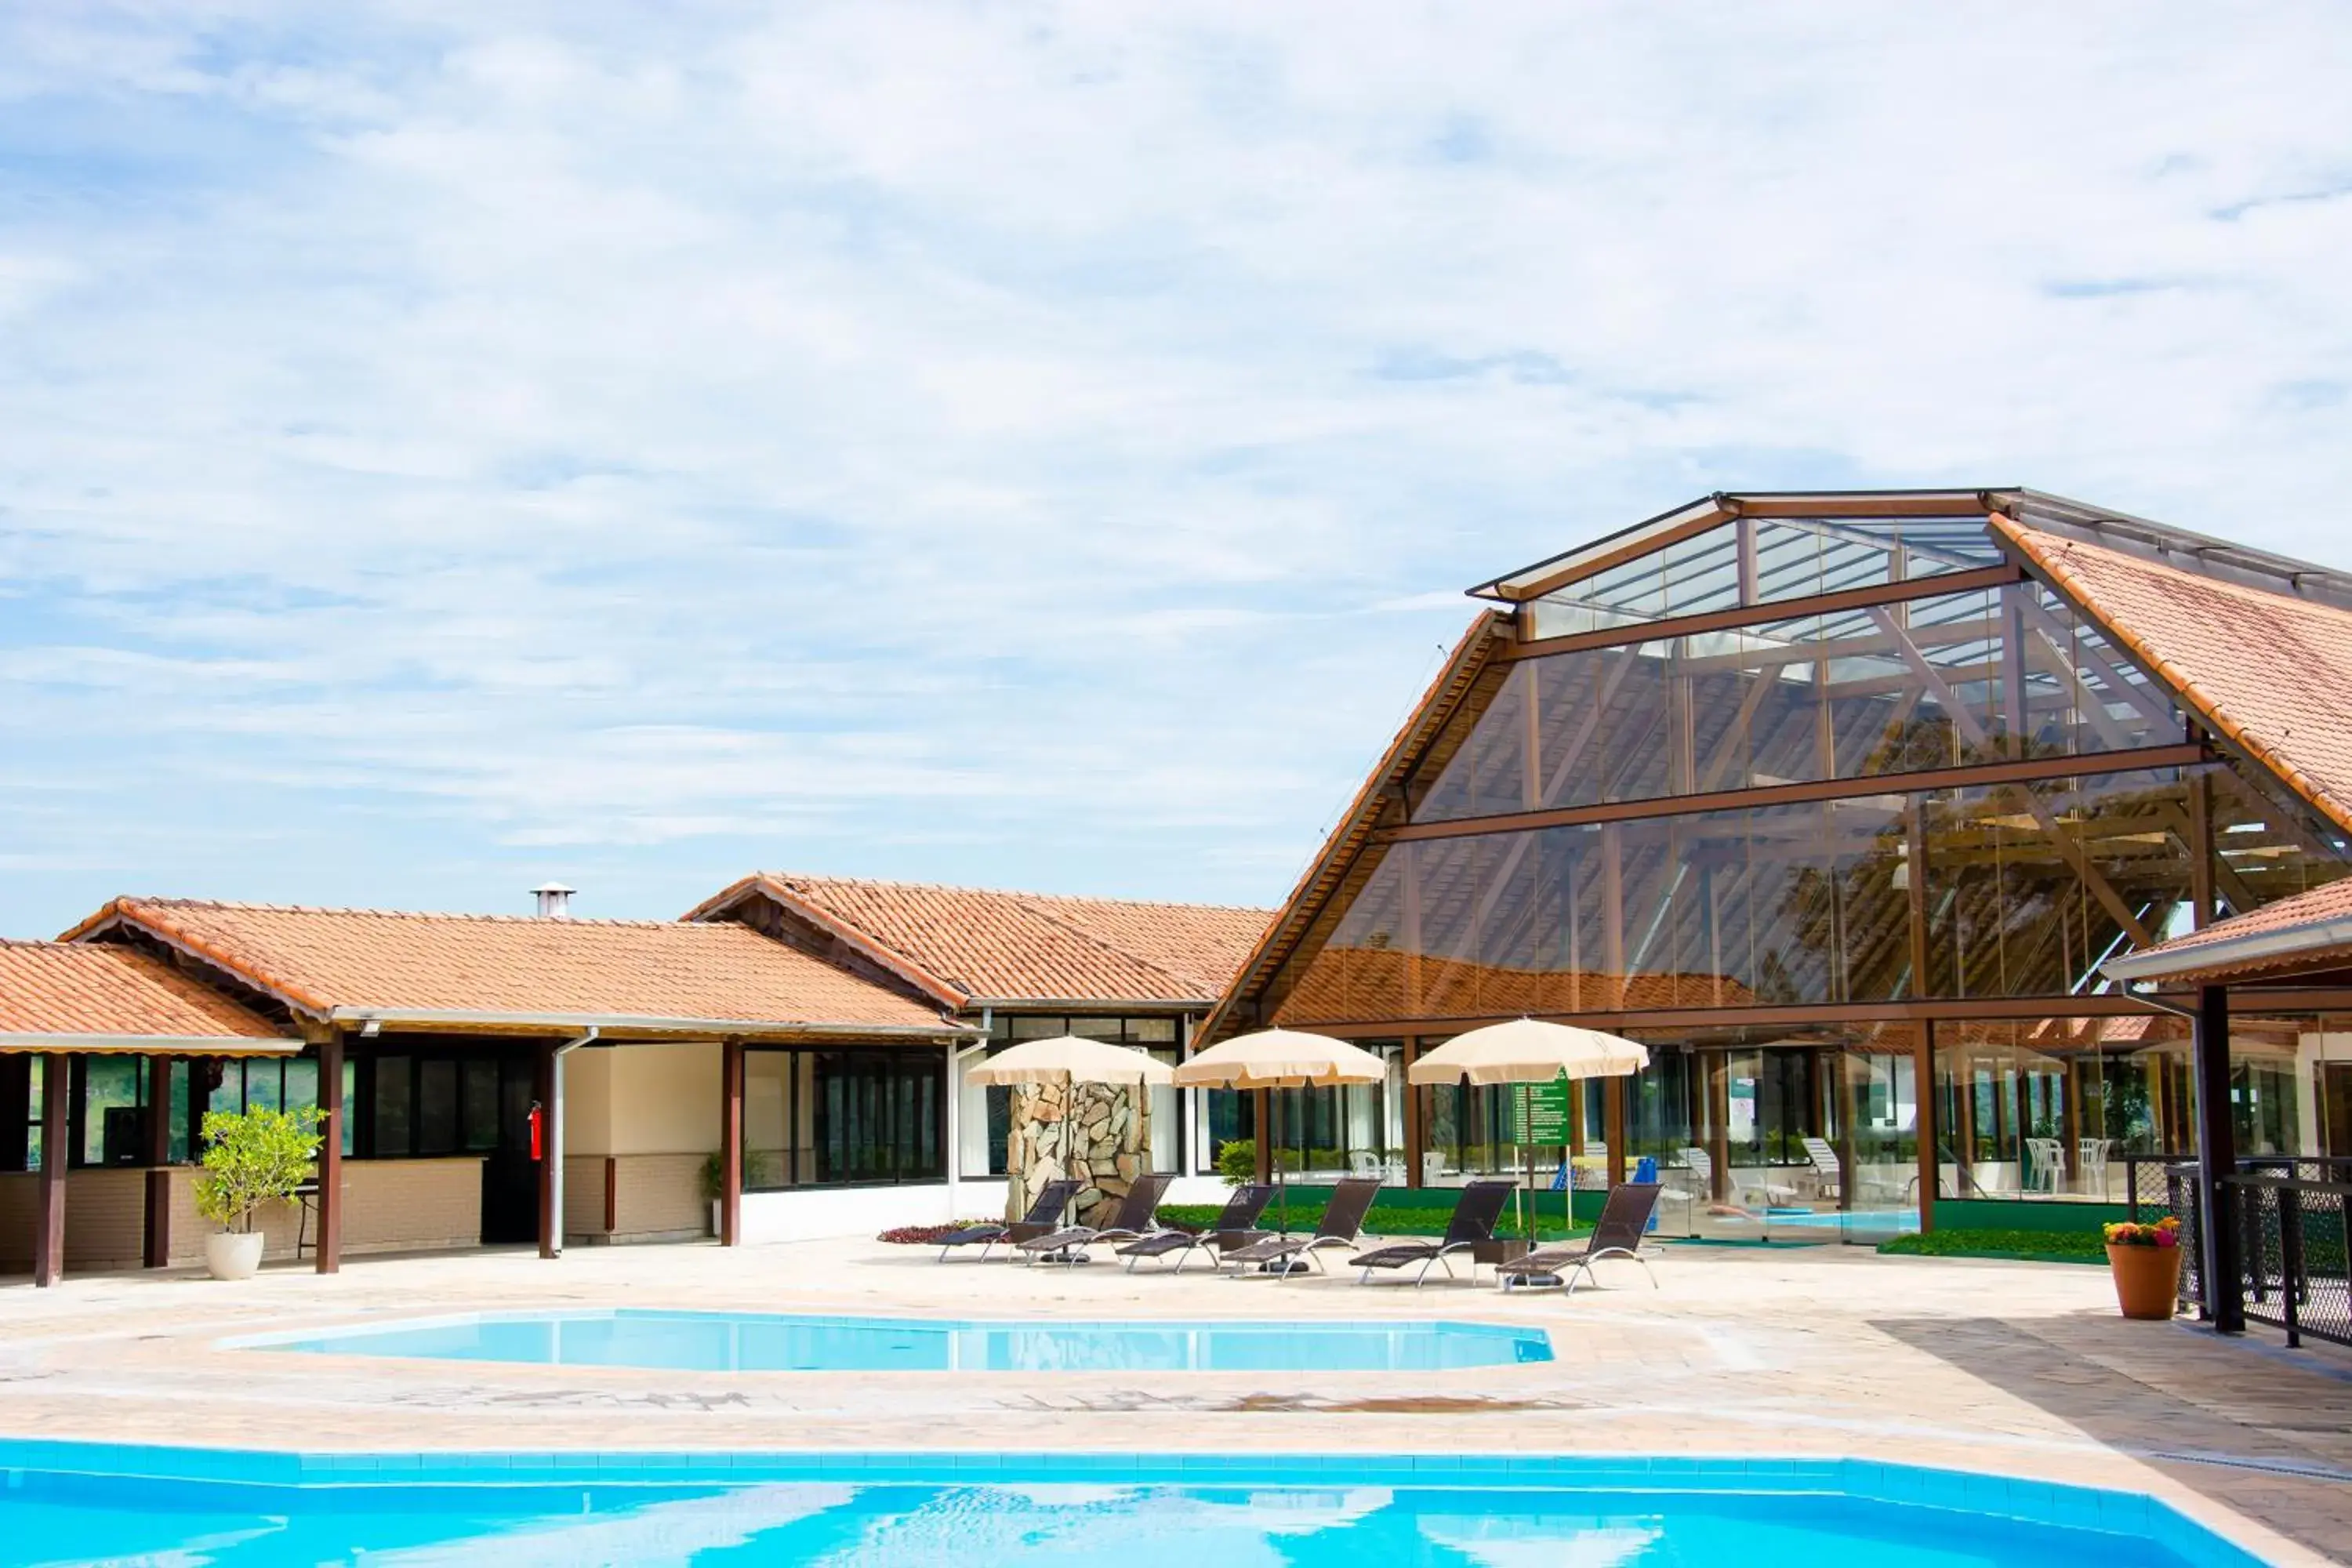 Pool view in Guararema Parque Hotel